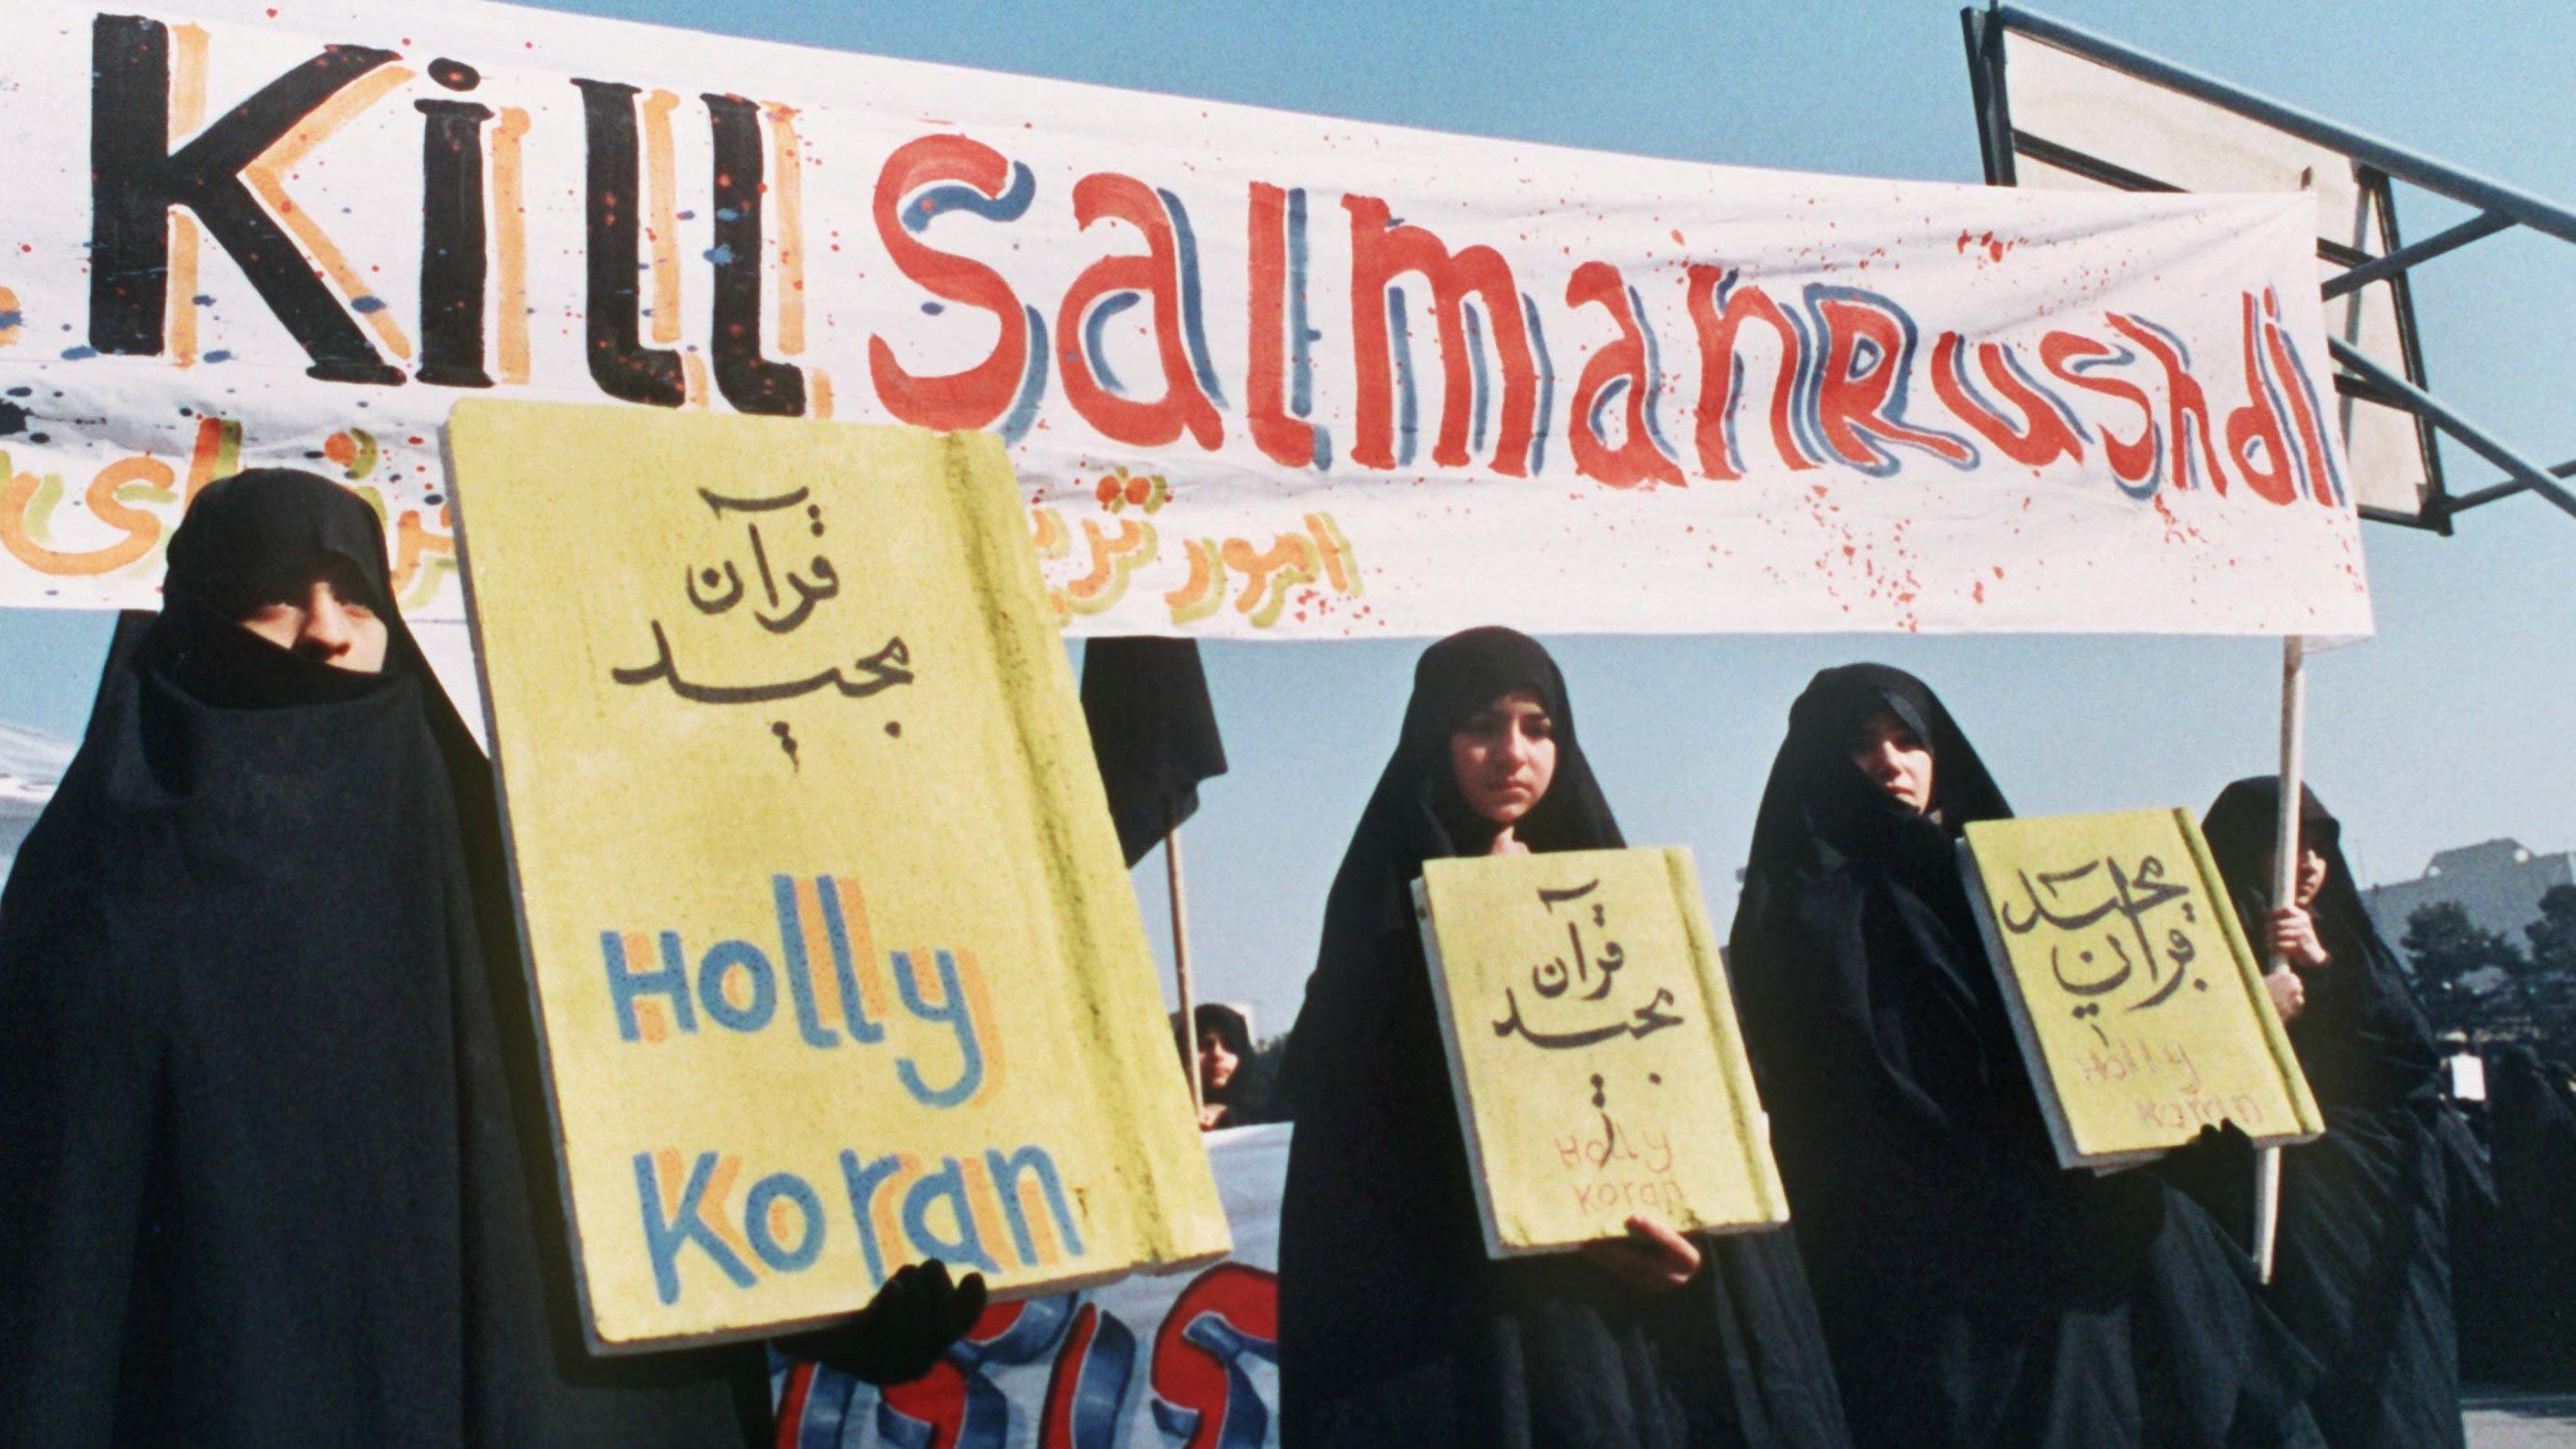 Kill Salman Rushdie ist auf einem Spruchband zu lesen, das iranische Frauen (Archivbild vom 17.2.1989) in Teheran bei einer Demonstration gegen den britischen Schriftsteller Salman Rushdie und sein Buch Satanische Verse mit sich führen. Der iranische